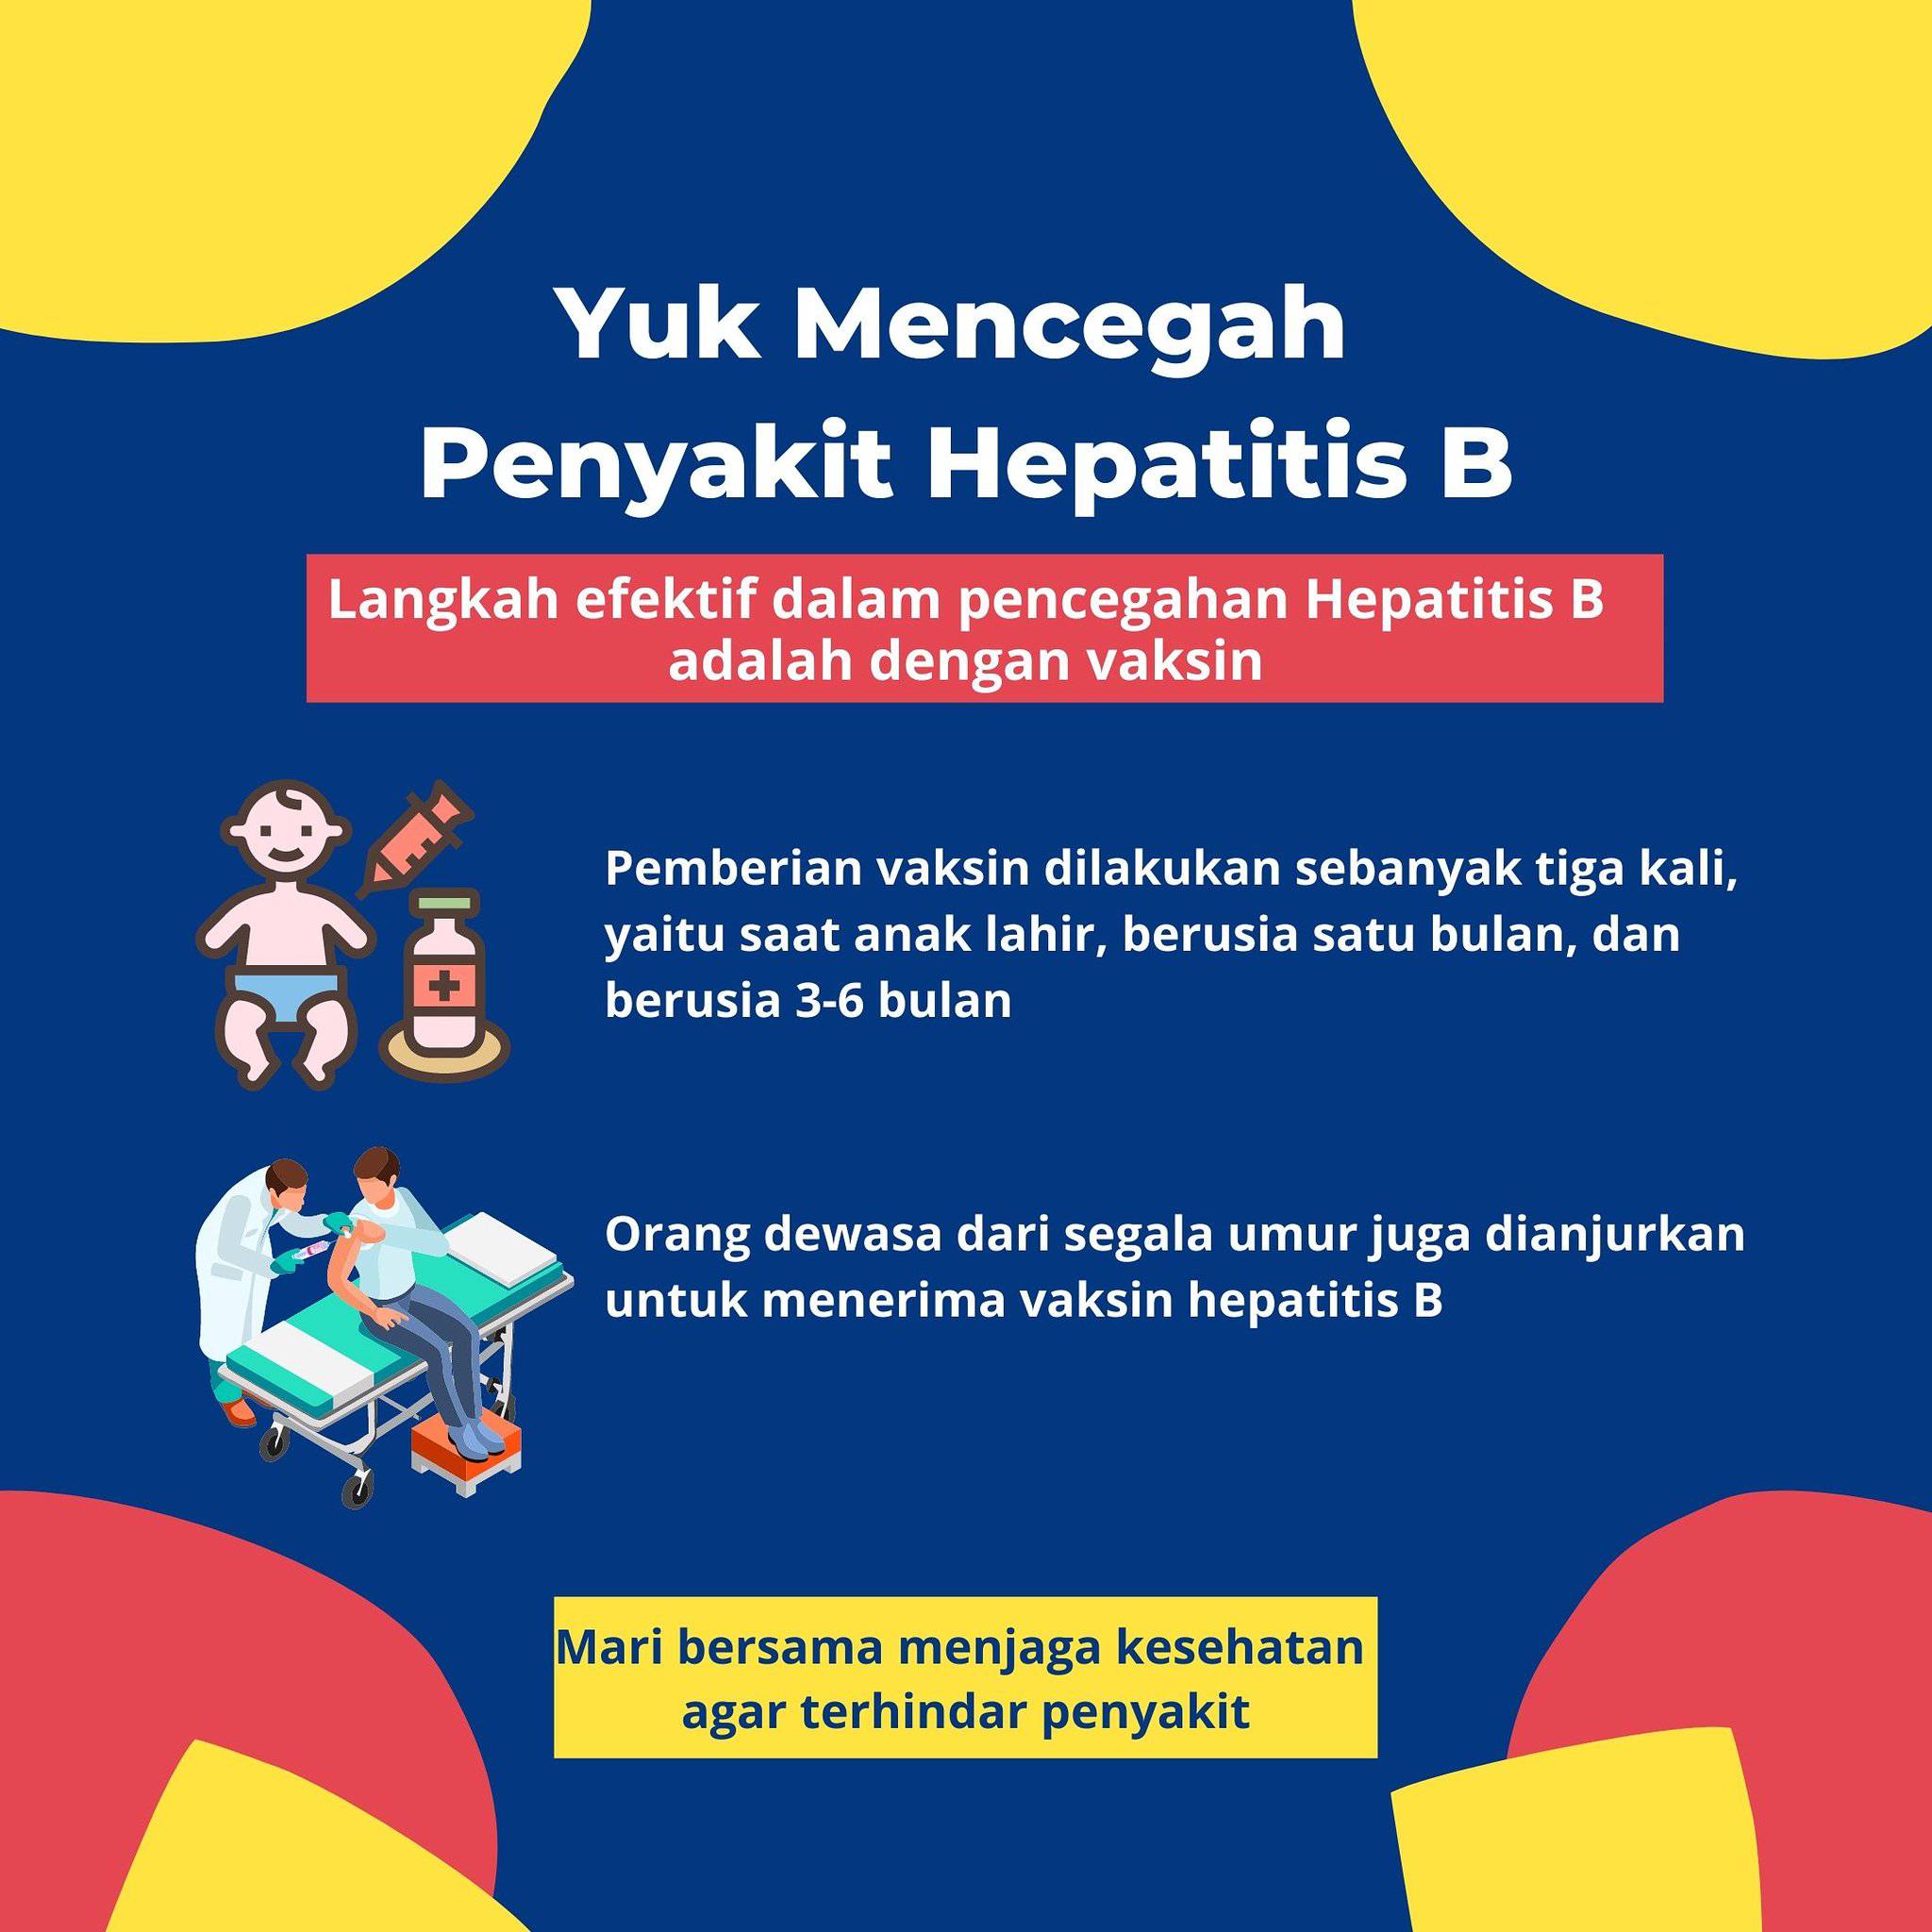 Salah satu cara mencegah hepatitis adalah dengan melakukan vaksinansi